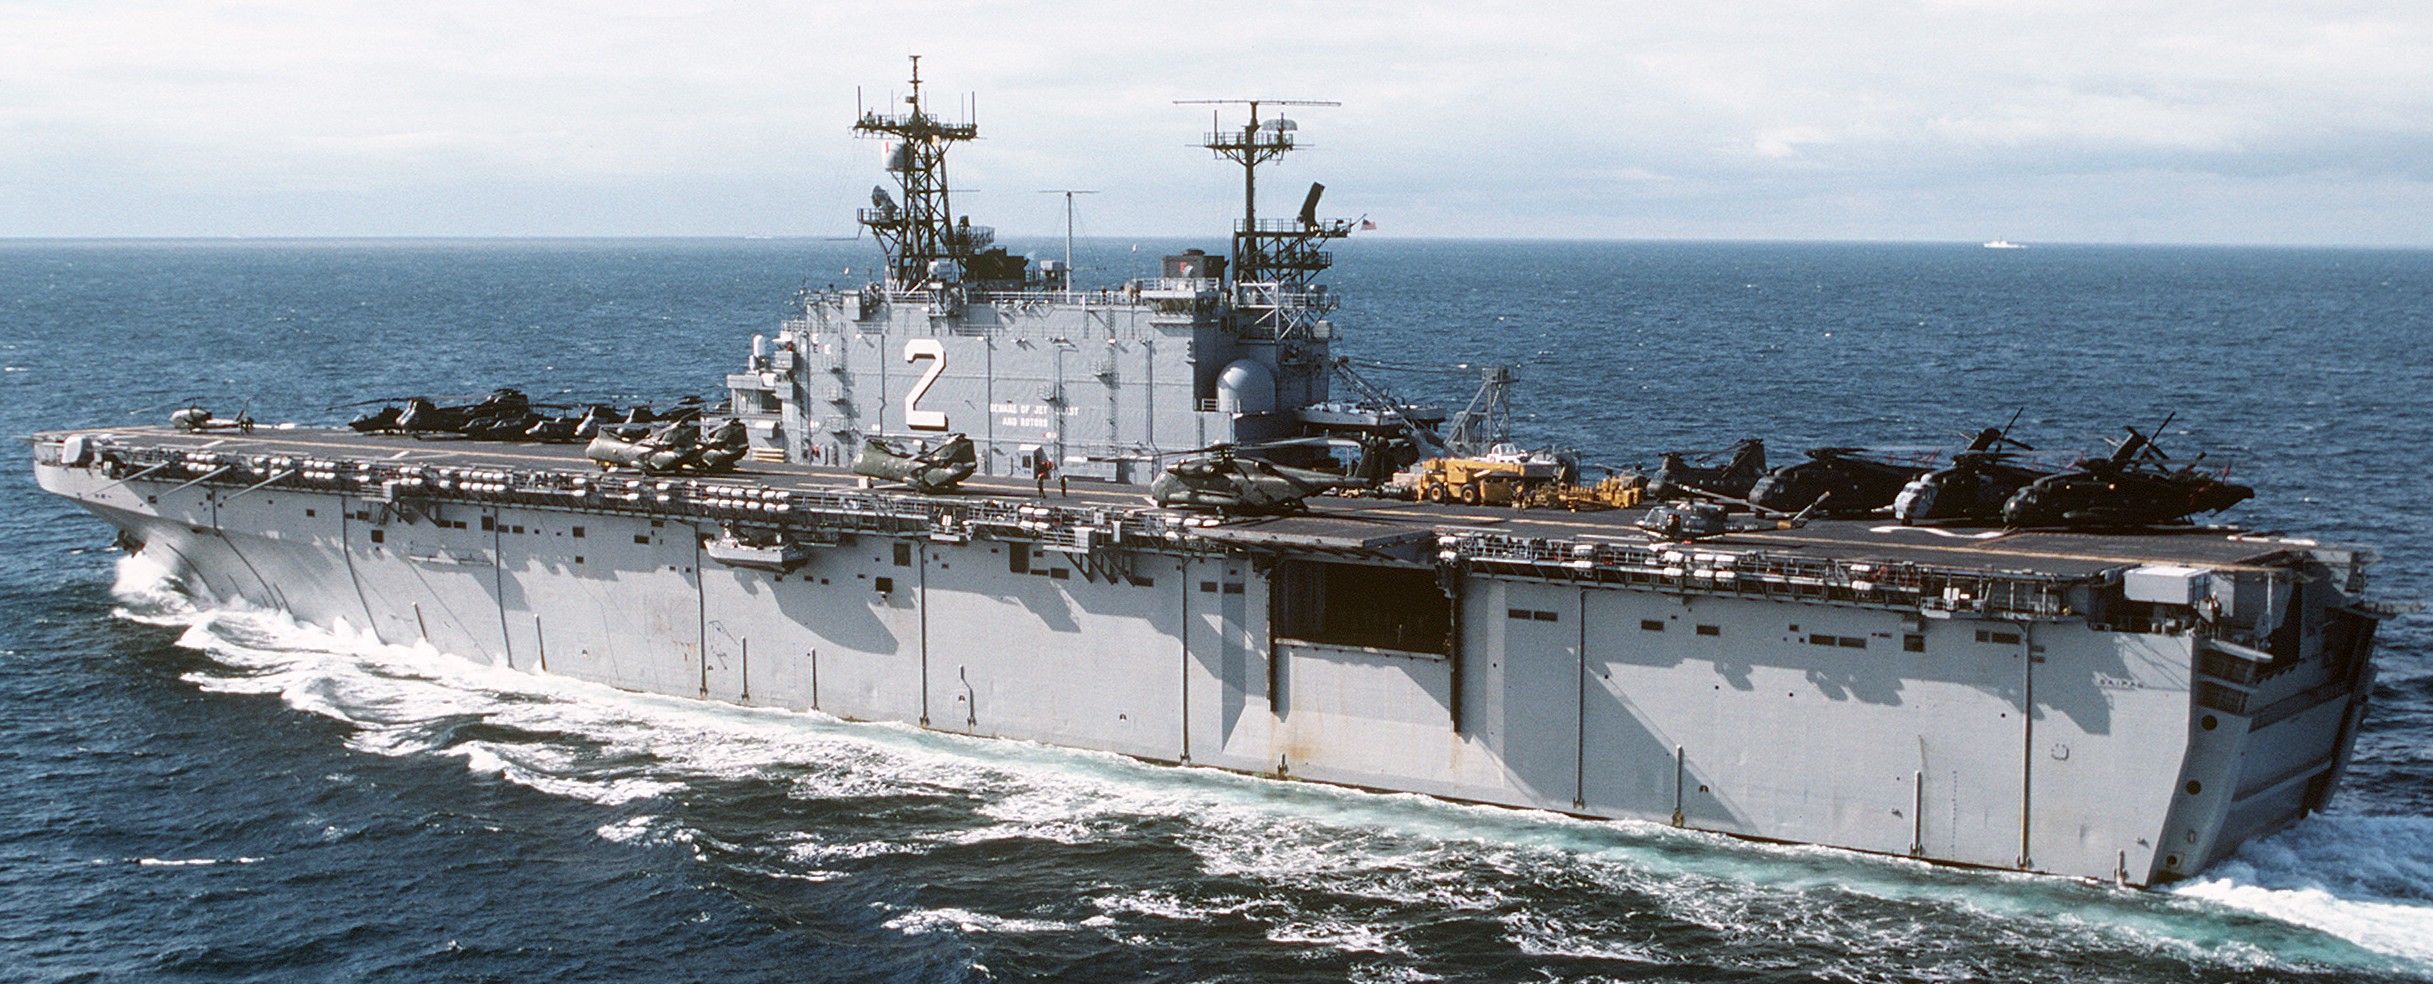 lha-2 uss saipan tarawa class amphibious assault ship us navy 51x ingalls shipbuilding pascagoula